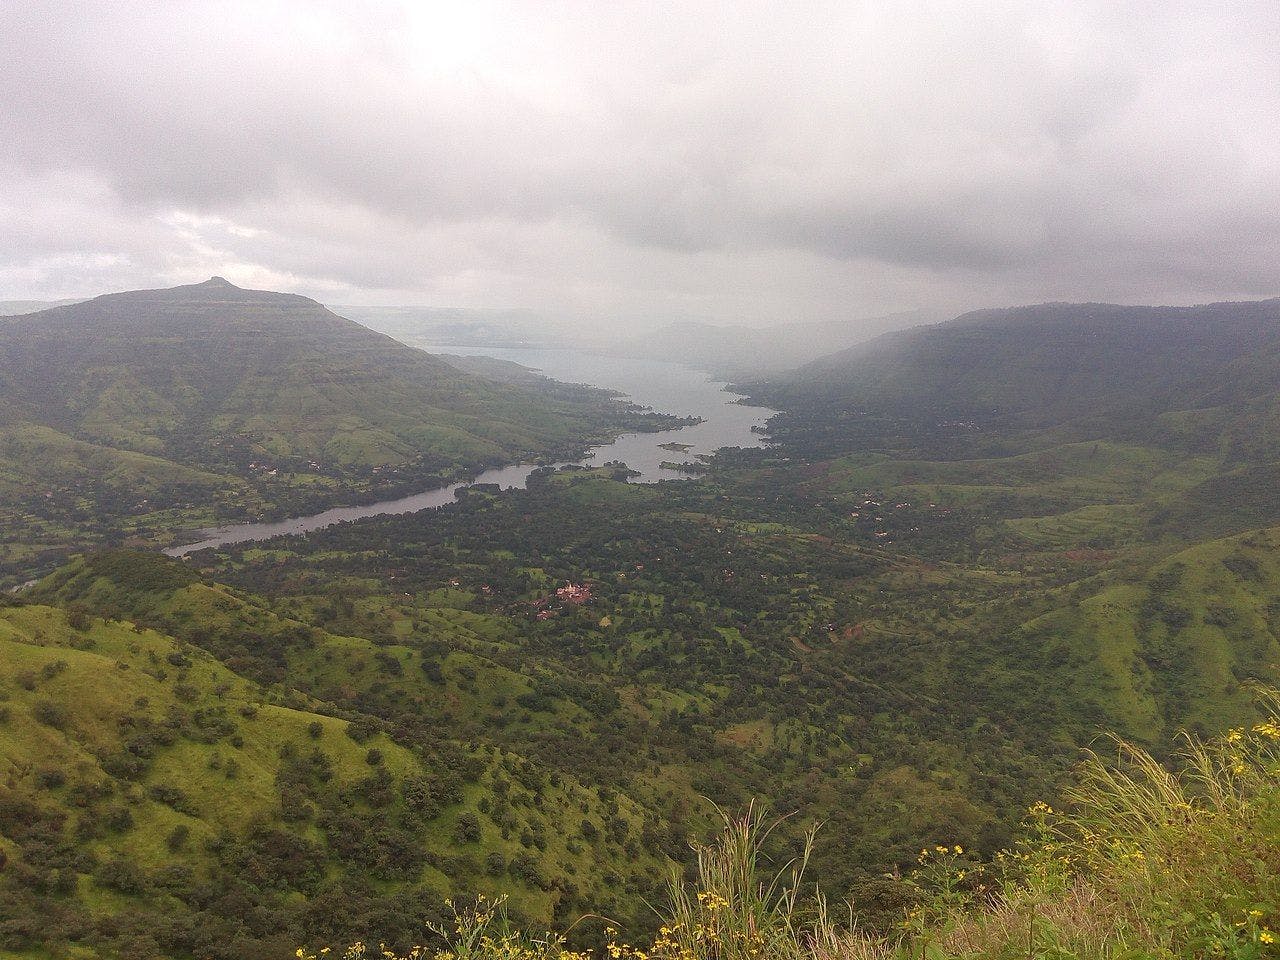 The view of Mahabaleshwar